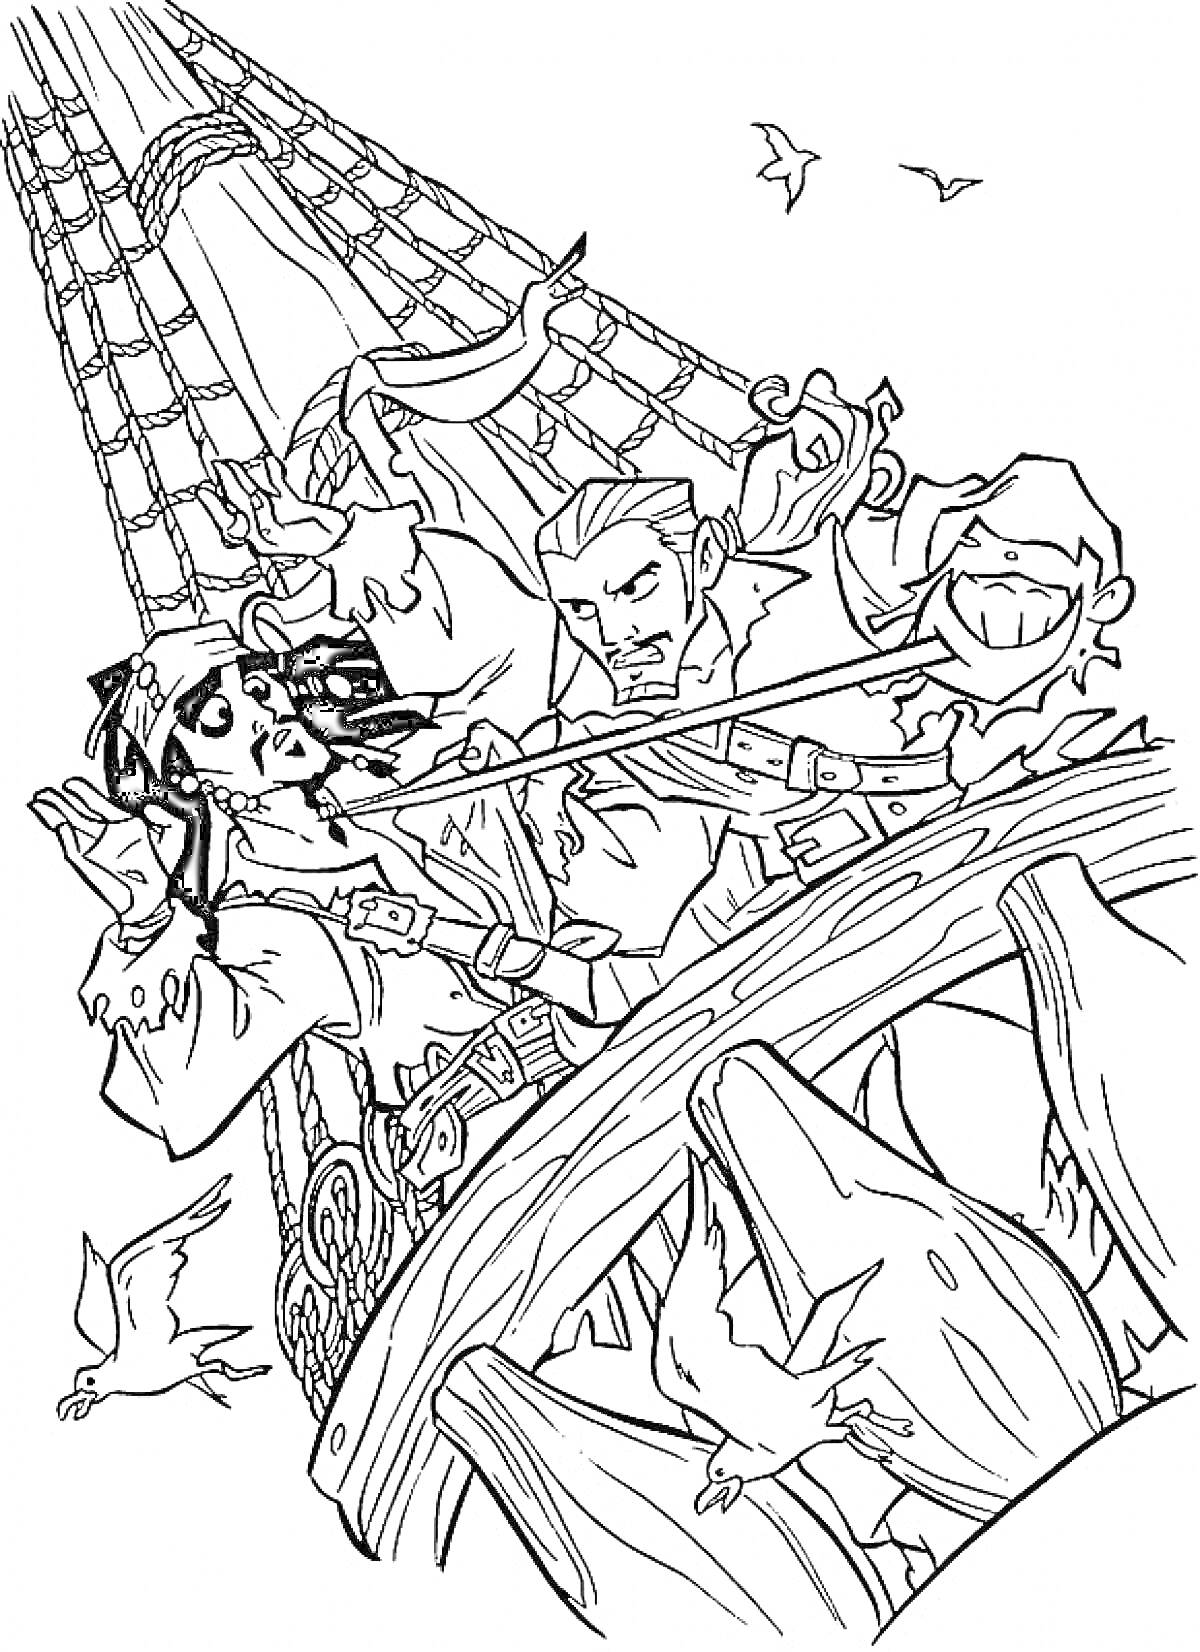 Раскраска Драка пиратов на корабле с попугаем, корабельной оснасткой и чайками